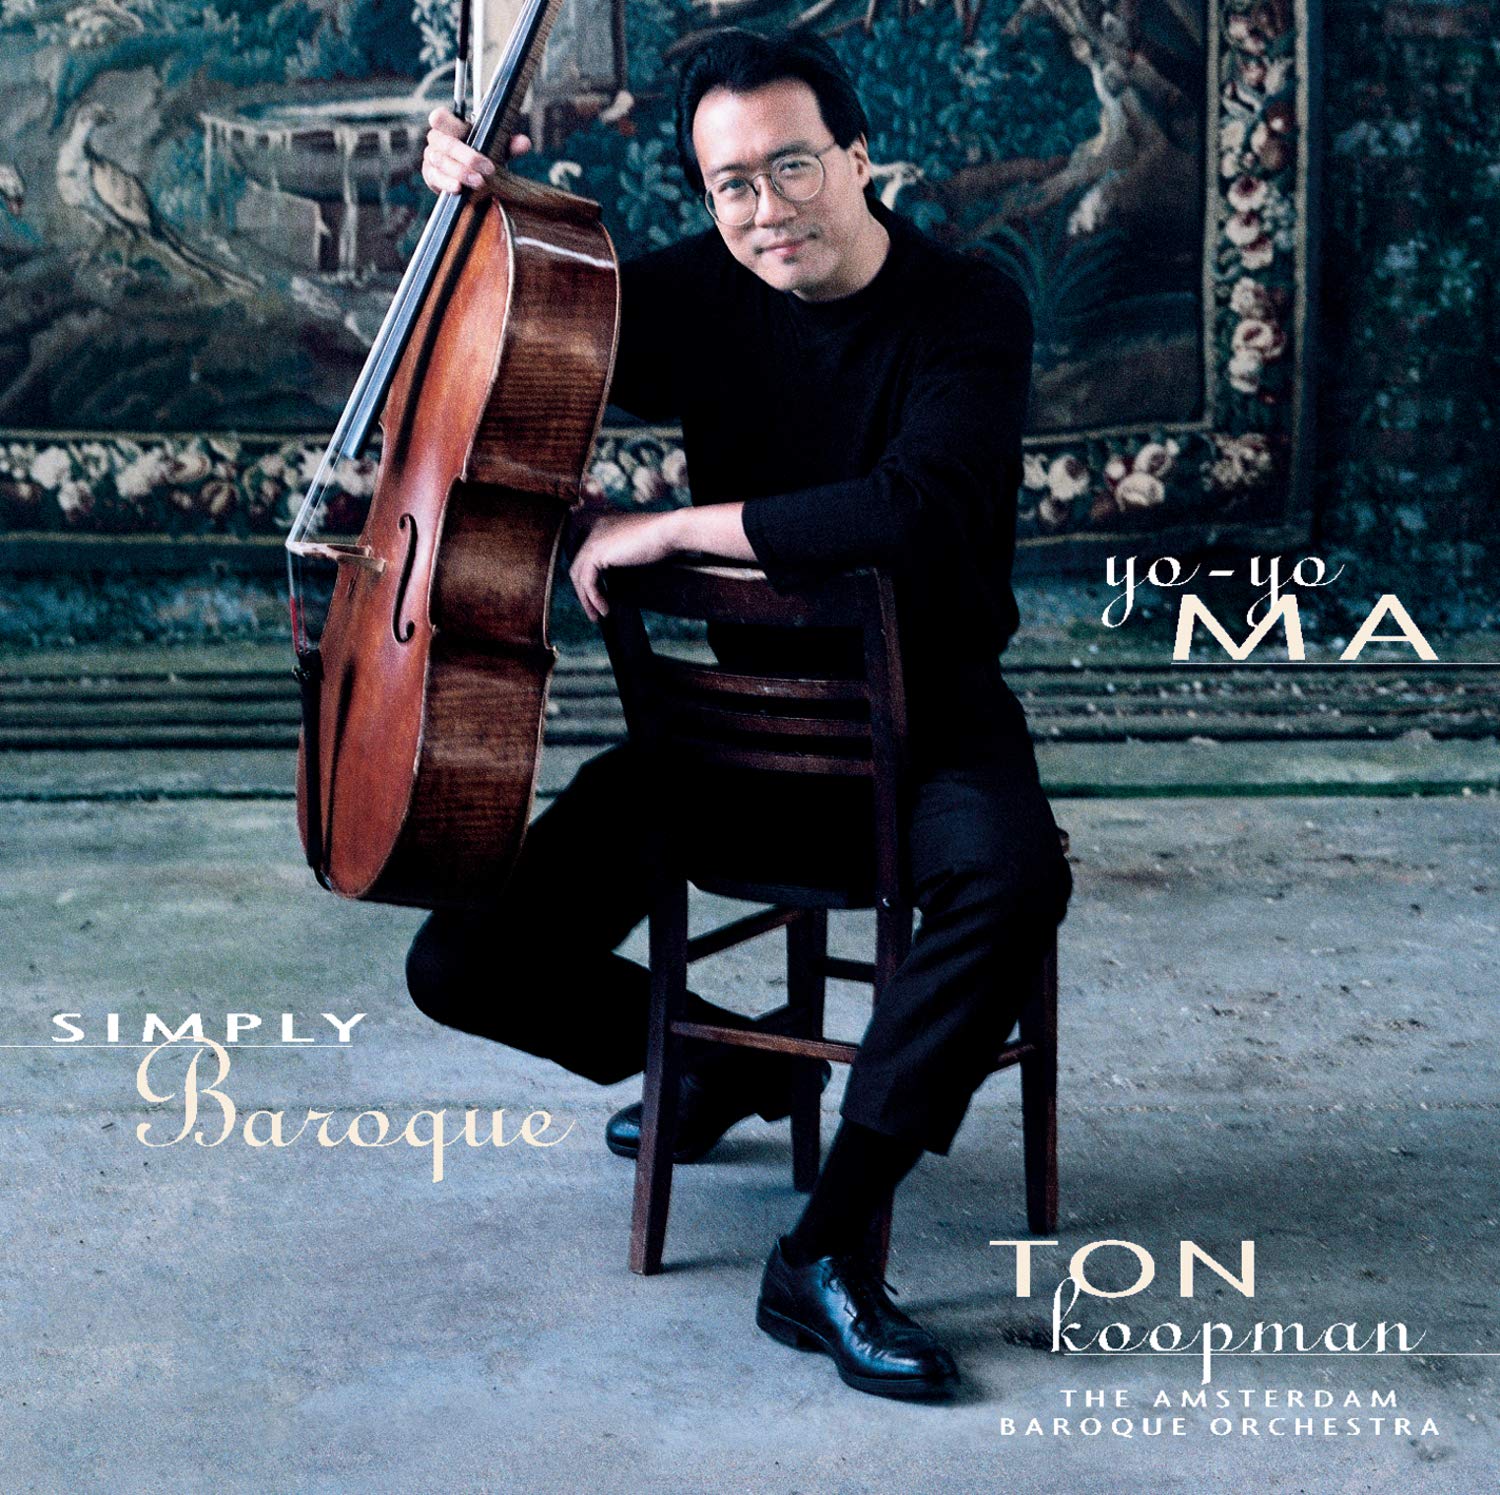 Yo-Yo Ma, Ton Koopman, The ABO - Simply Baroque (1999) [Reissue 2016] SACD ISO + FLAC 24bit/48kHz